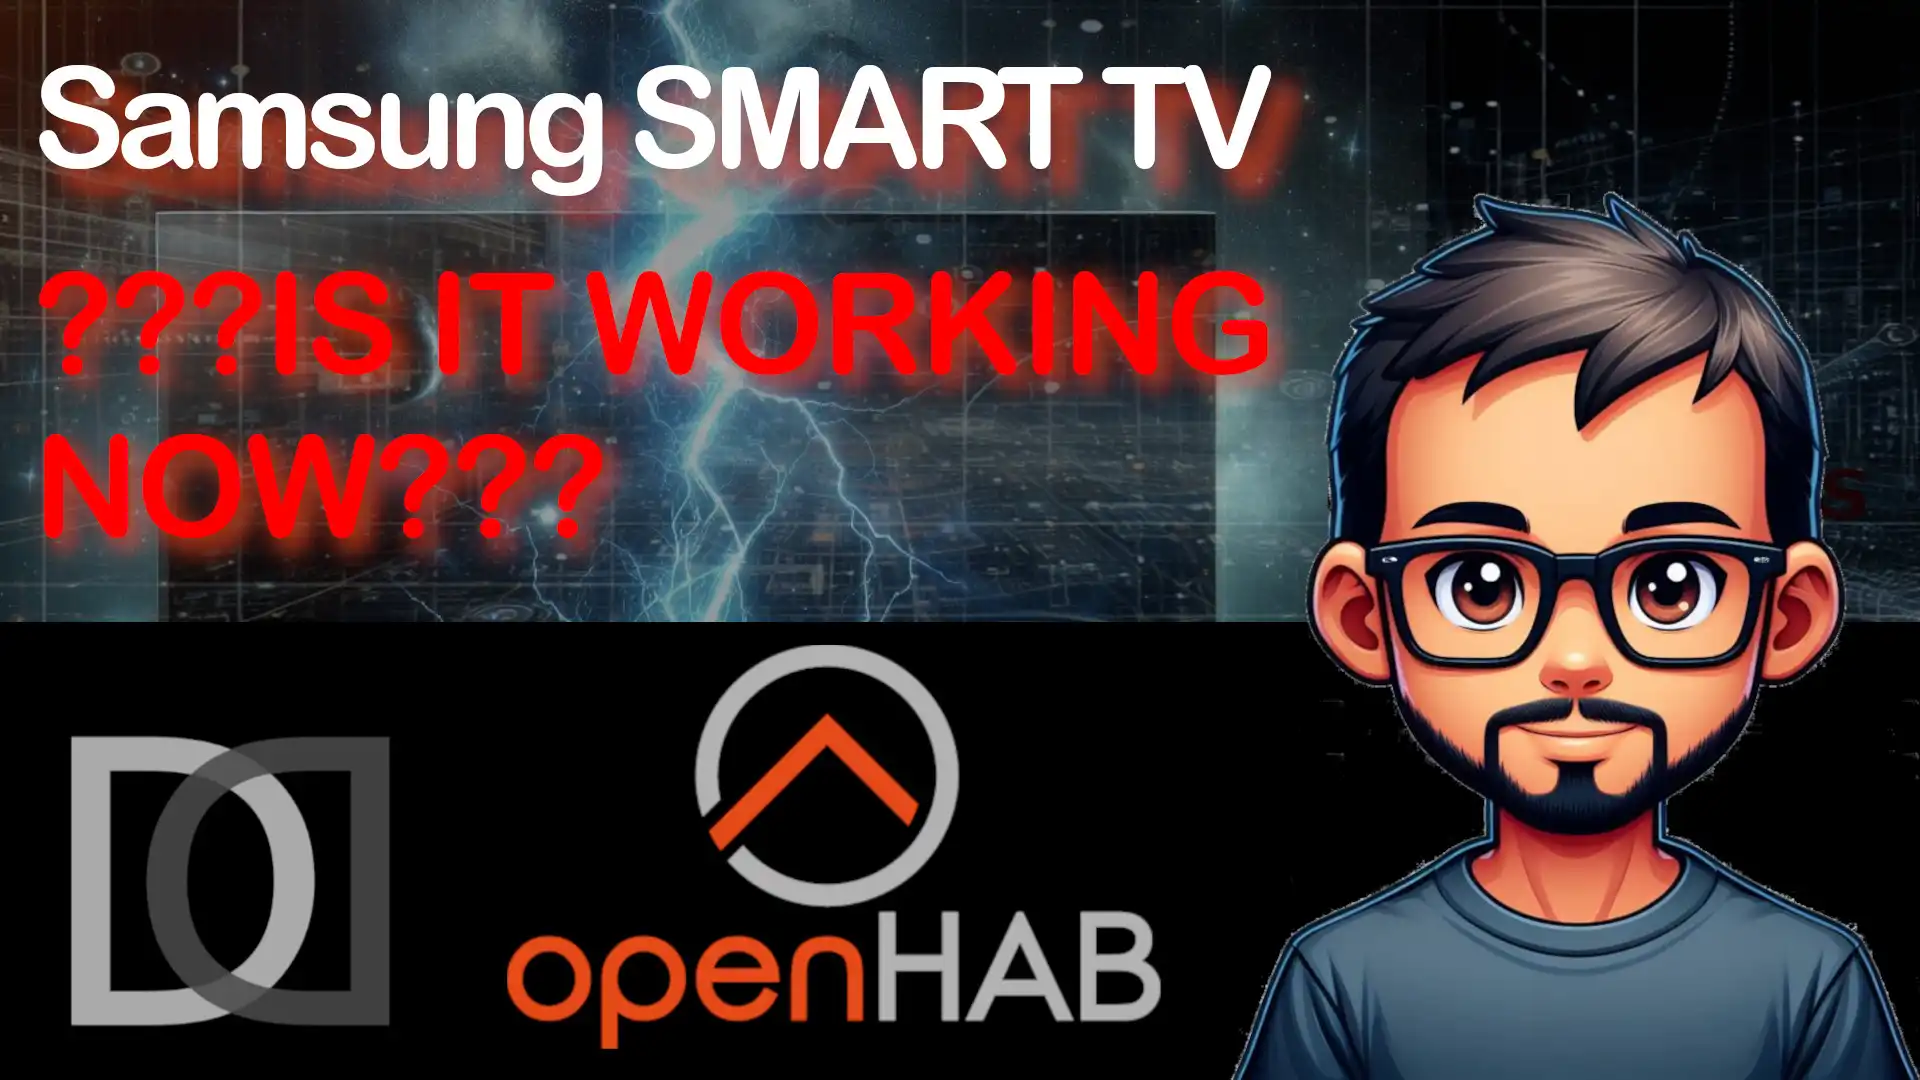 OpenHAB 4.1 - SAMSUNG Smart TV, come sarà finita la mia integrazione? - Video - Home Automation System